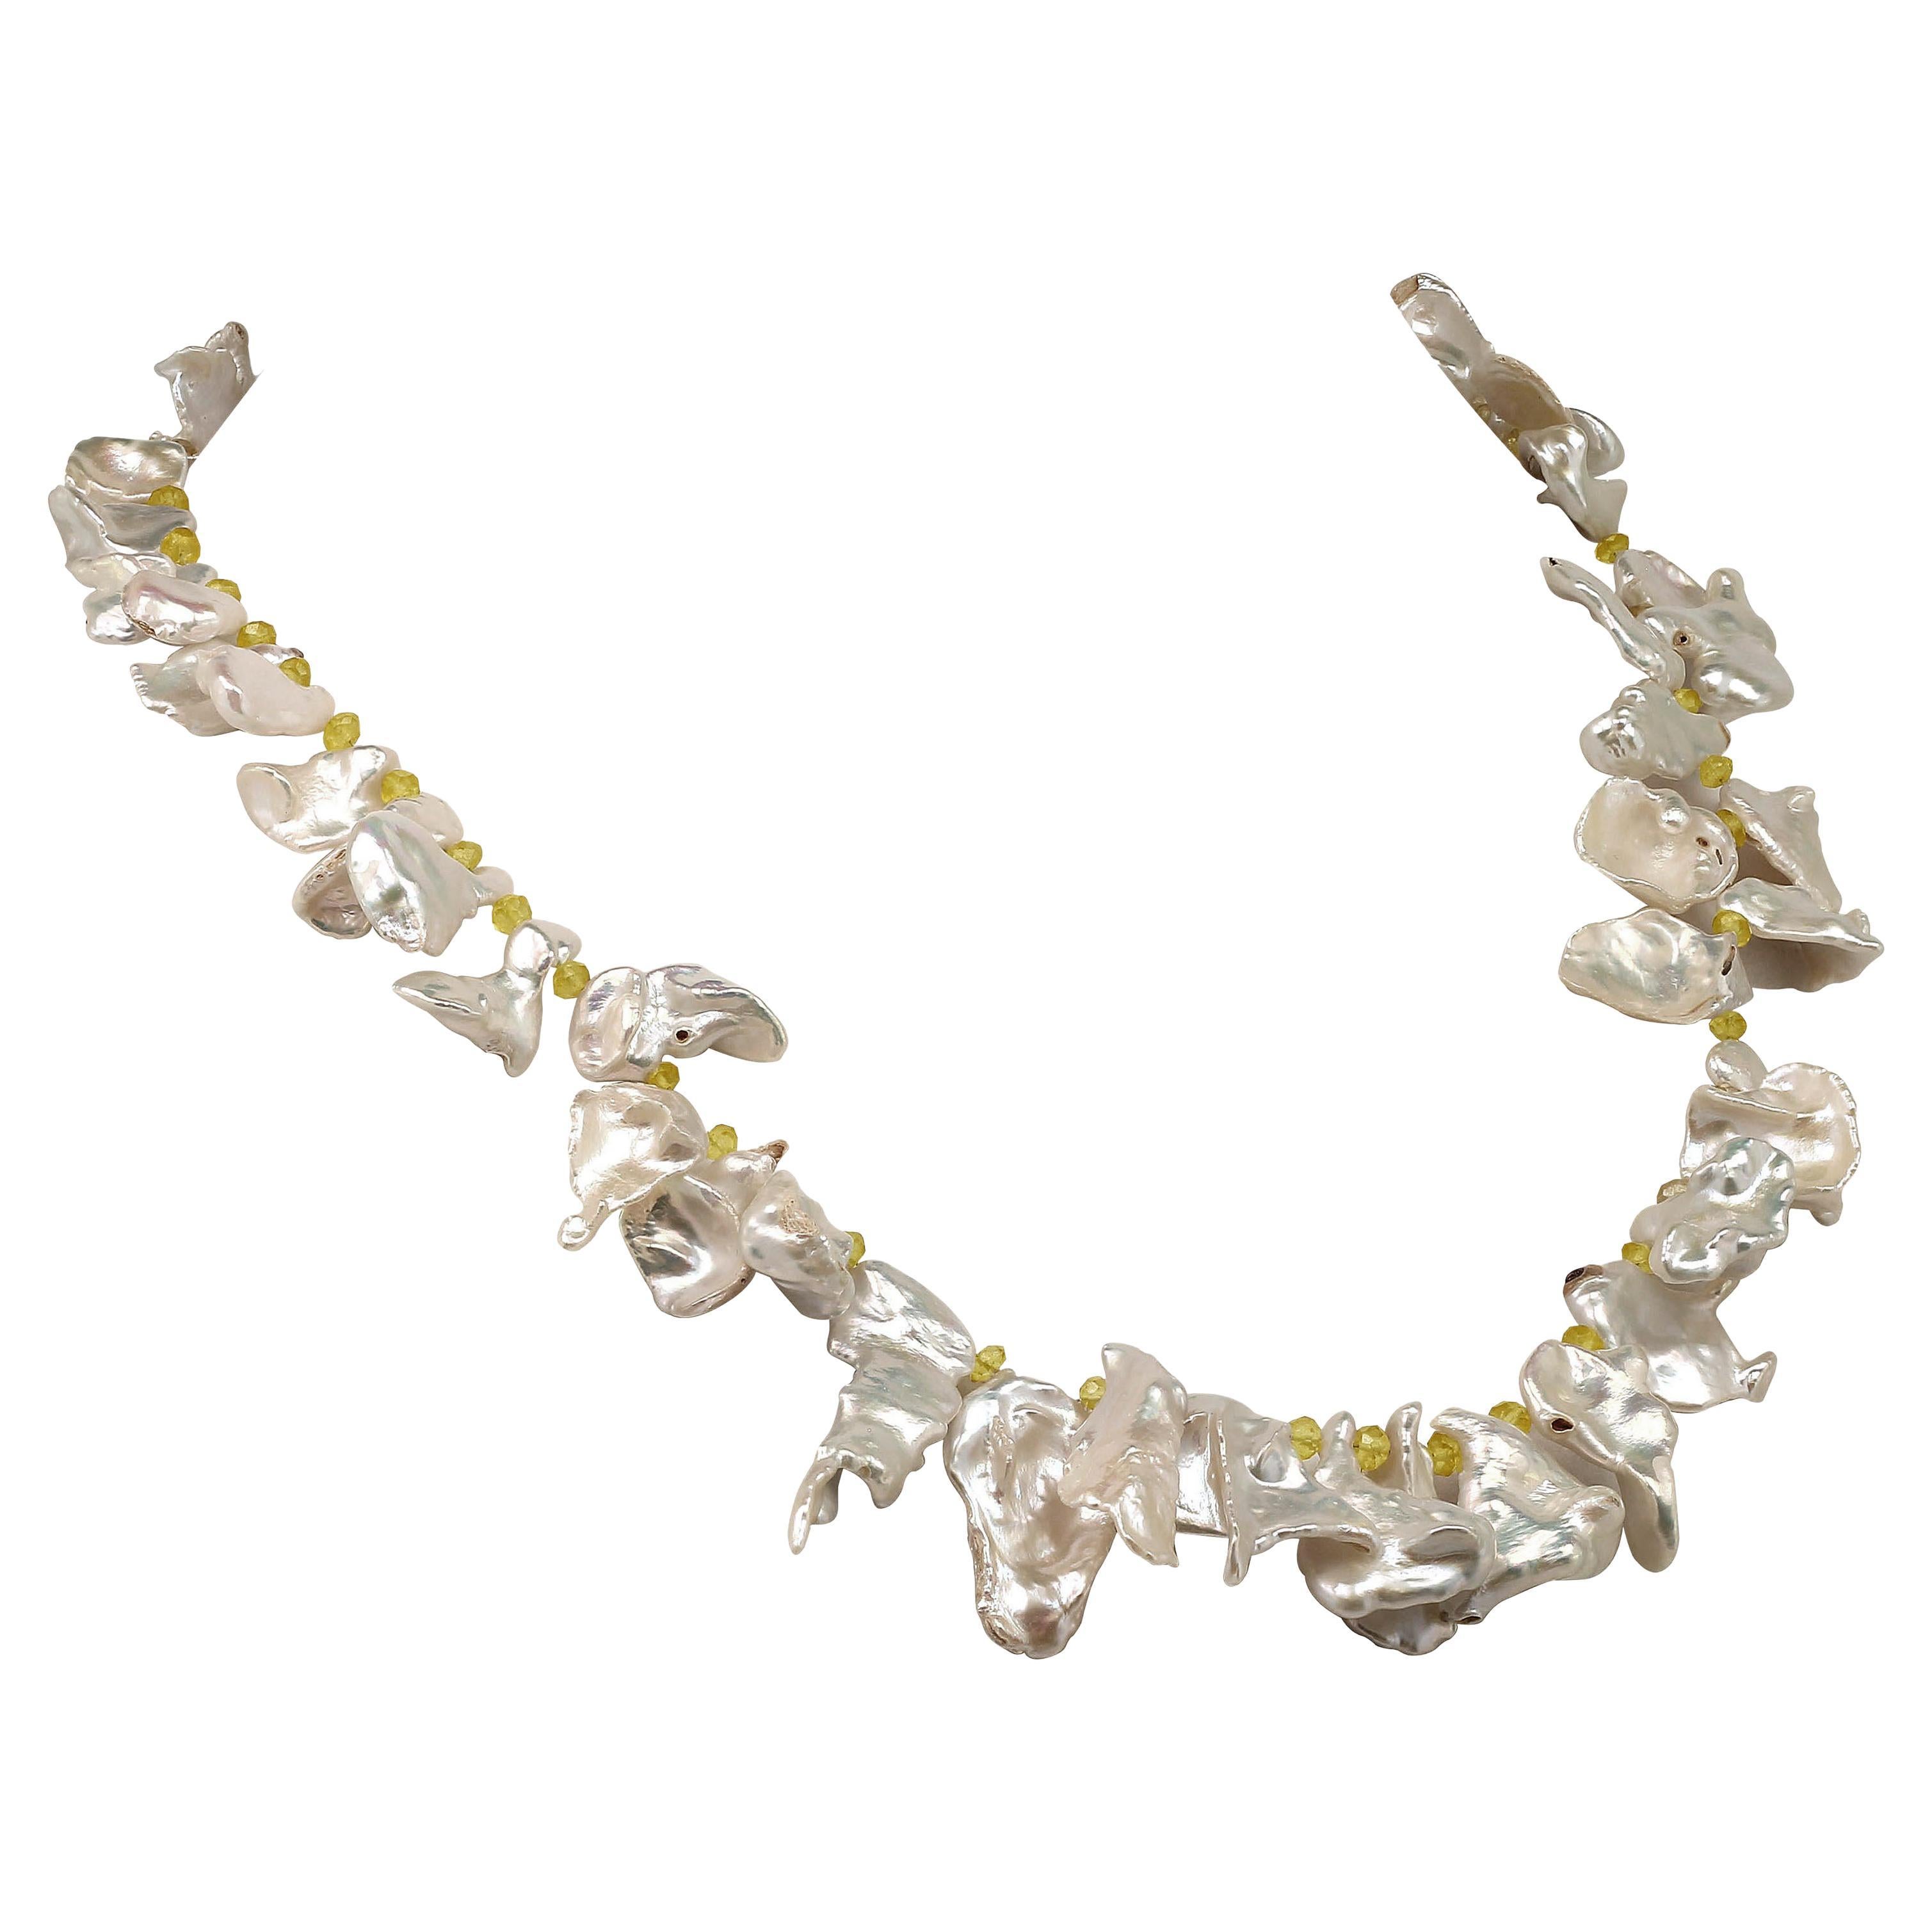 Weil du es verdienst, Perlen zu besitzen
Individuell angefertigte, 25 Zoll lange irisierende weiße Keshi-Perlenkette mit Akzenten aus goldgelben Citrin-Rondellen. Diese schönen, leuchtenden Perlen strahlen ein magisches Schillern aus. Sie sind meist